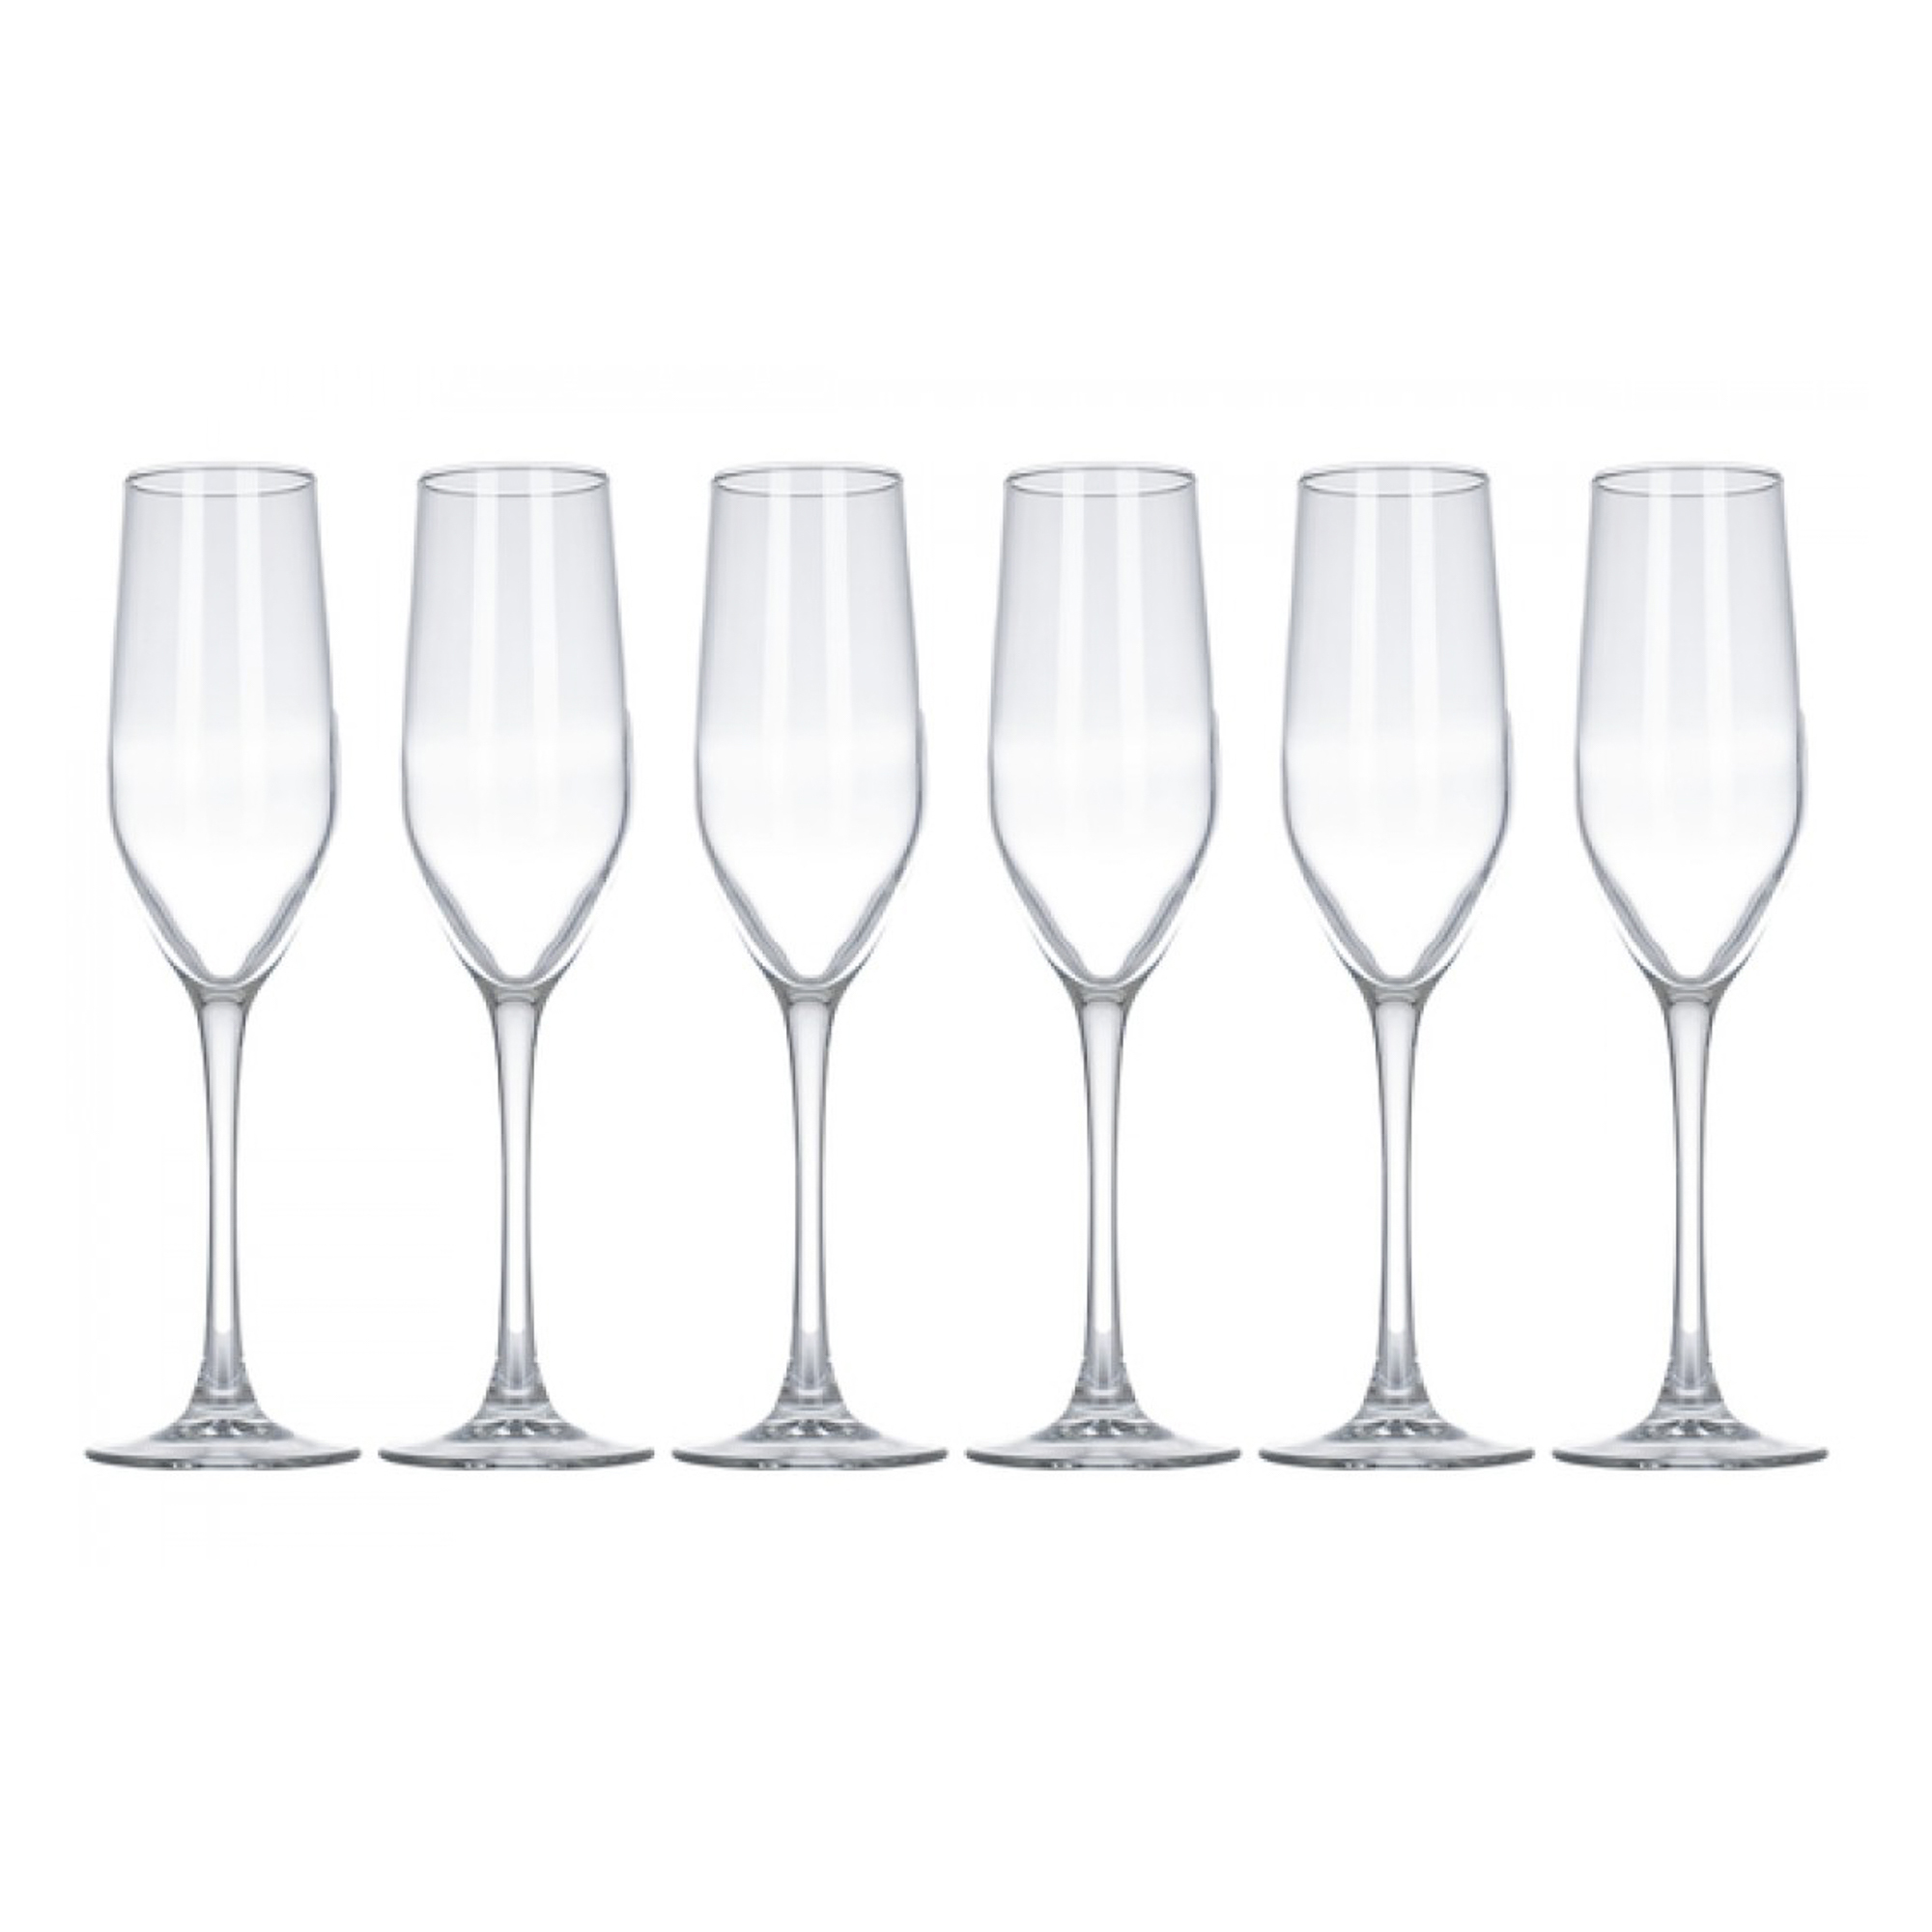 Набор бокалов для шампанского Luminarc селест 160мл 6шт набор фужеров для вина luminarc французский ресторанчик 210 мл 6 шт luminarc 1380011